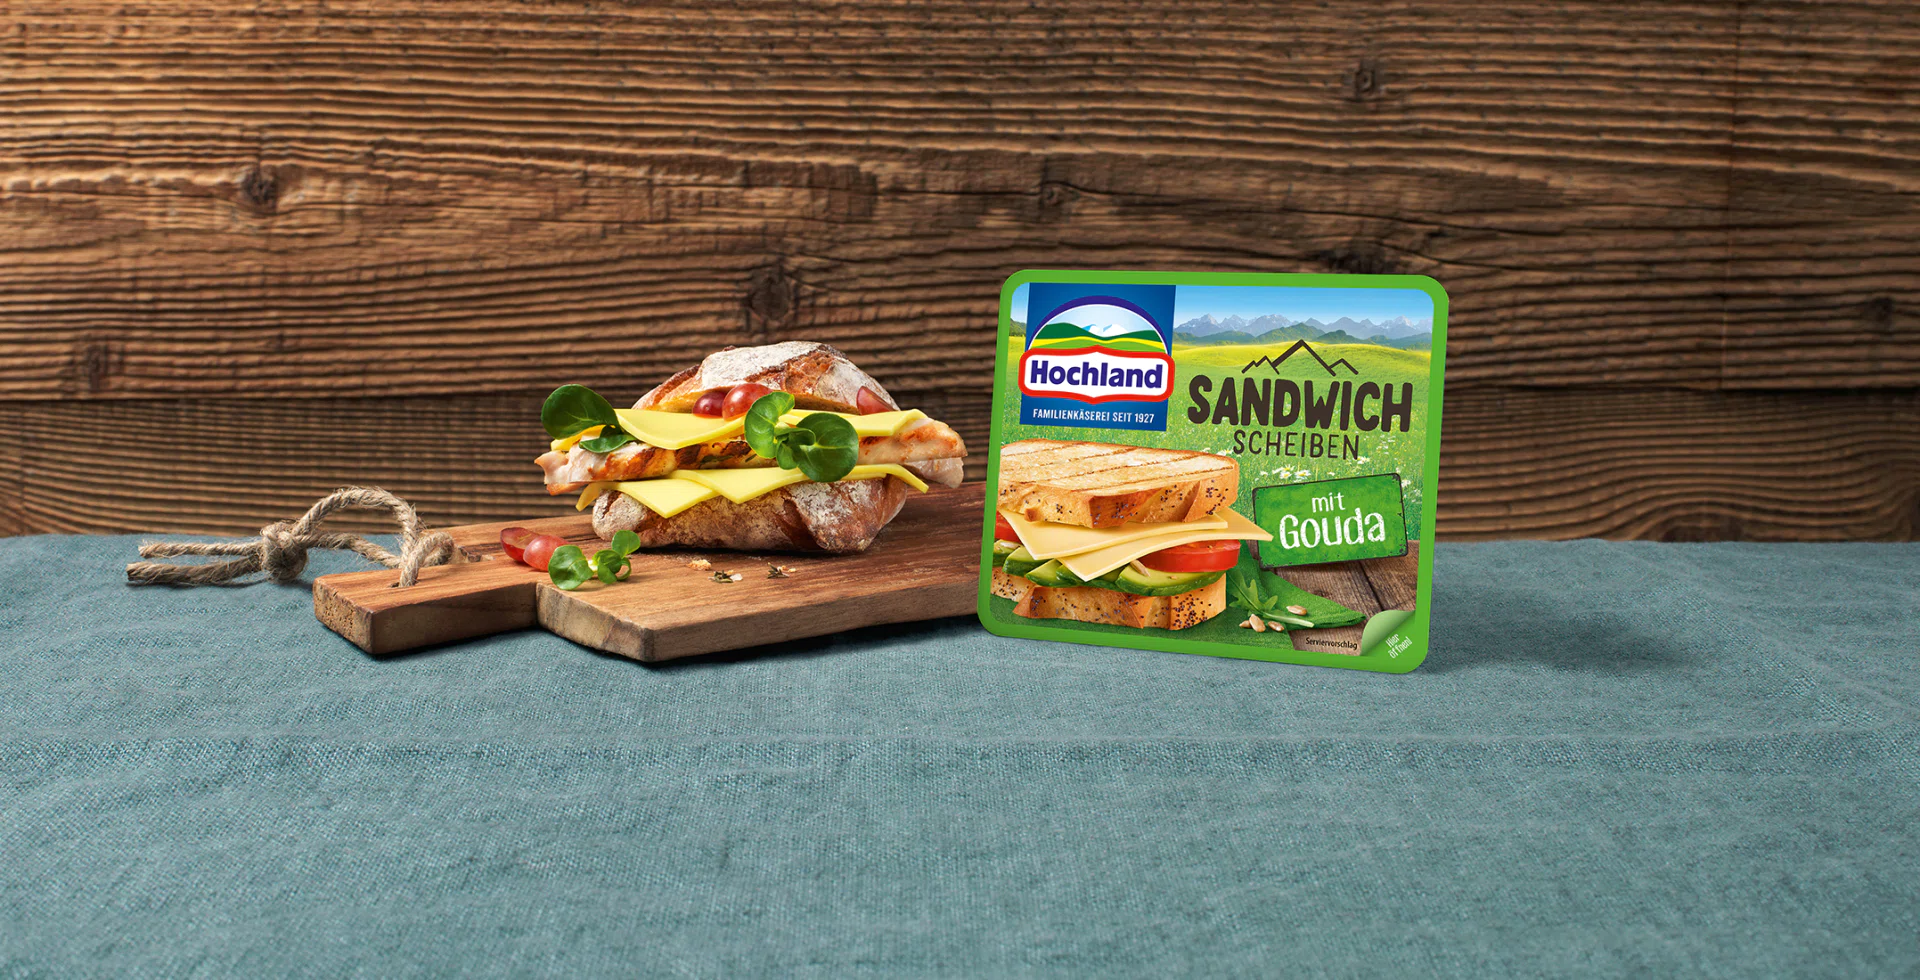 Hochland Sandwich Scheiben Gouda